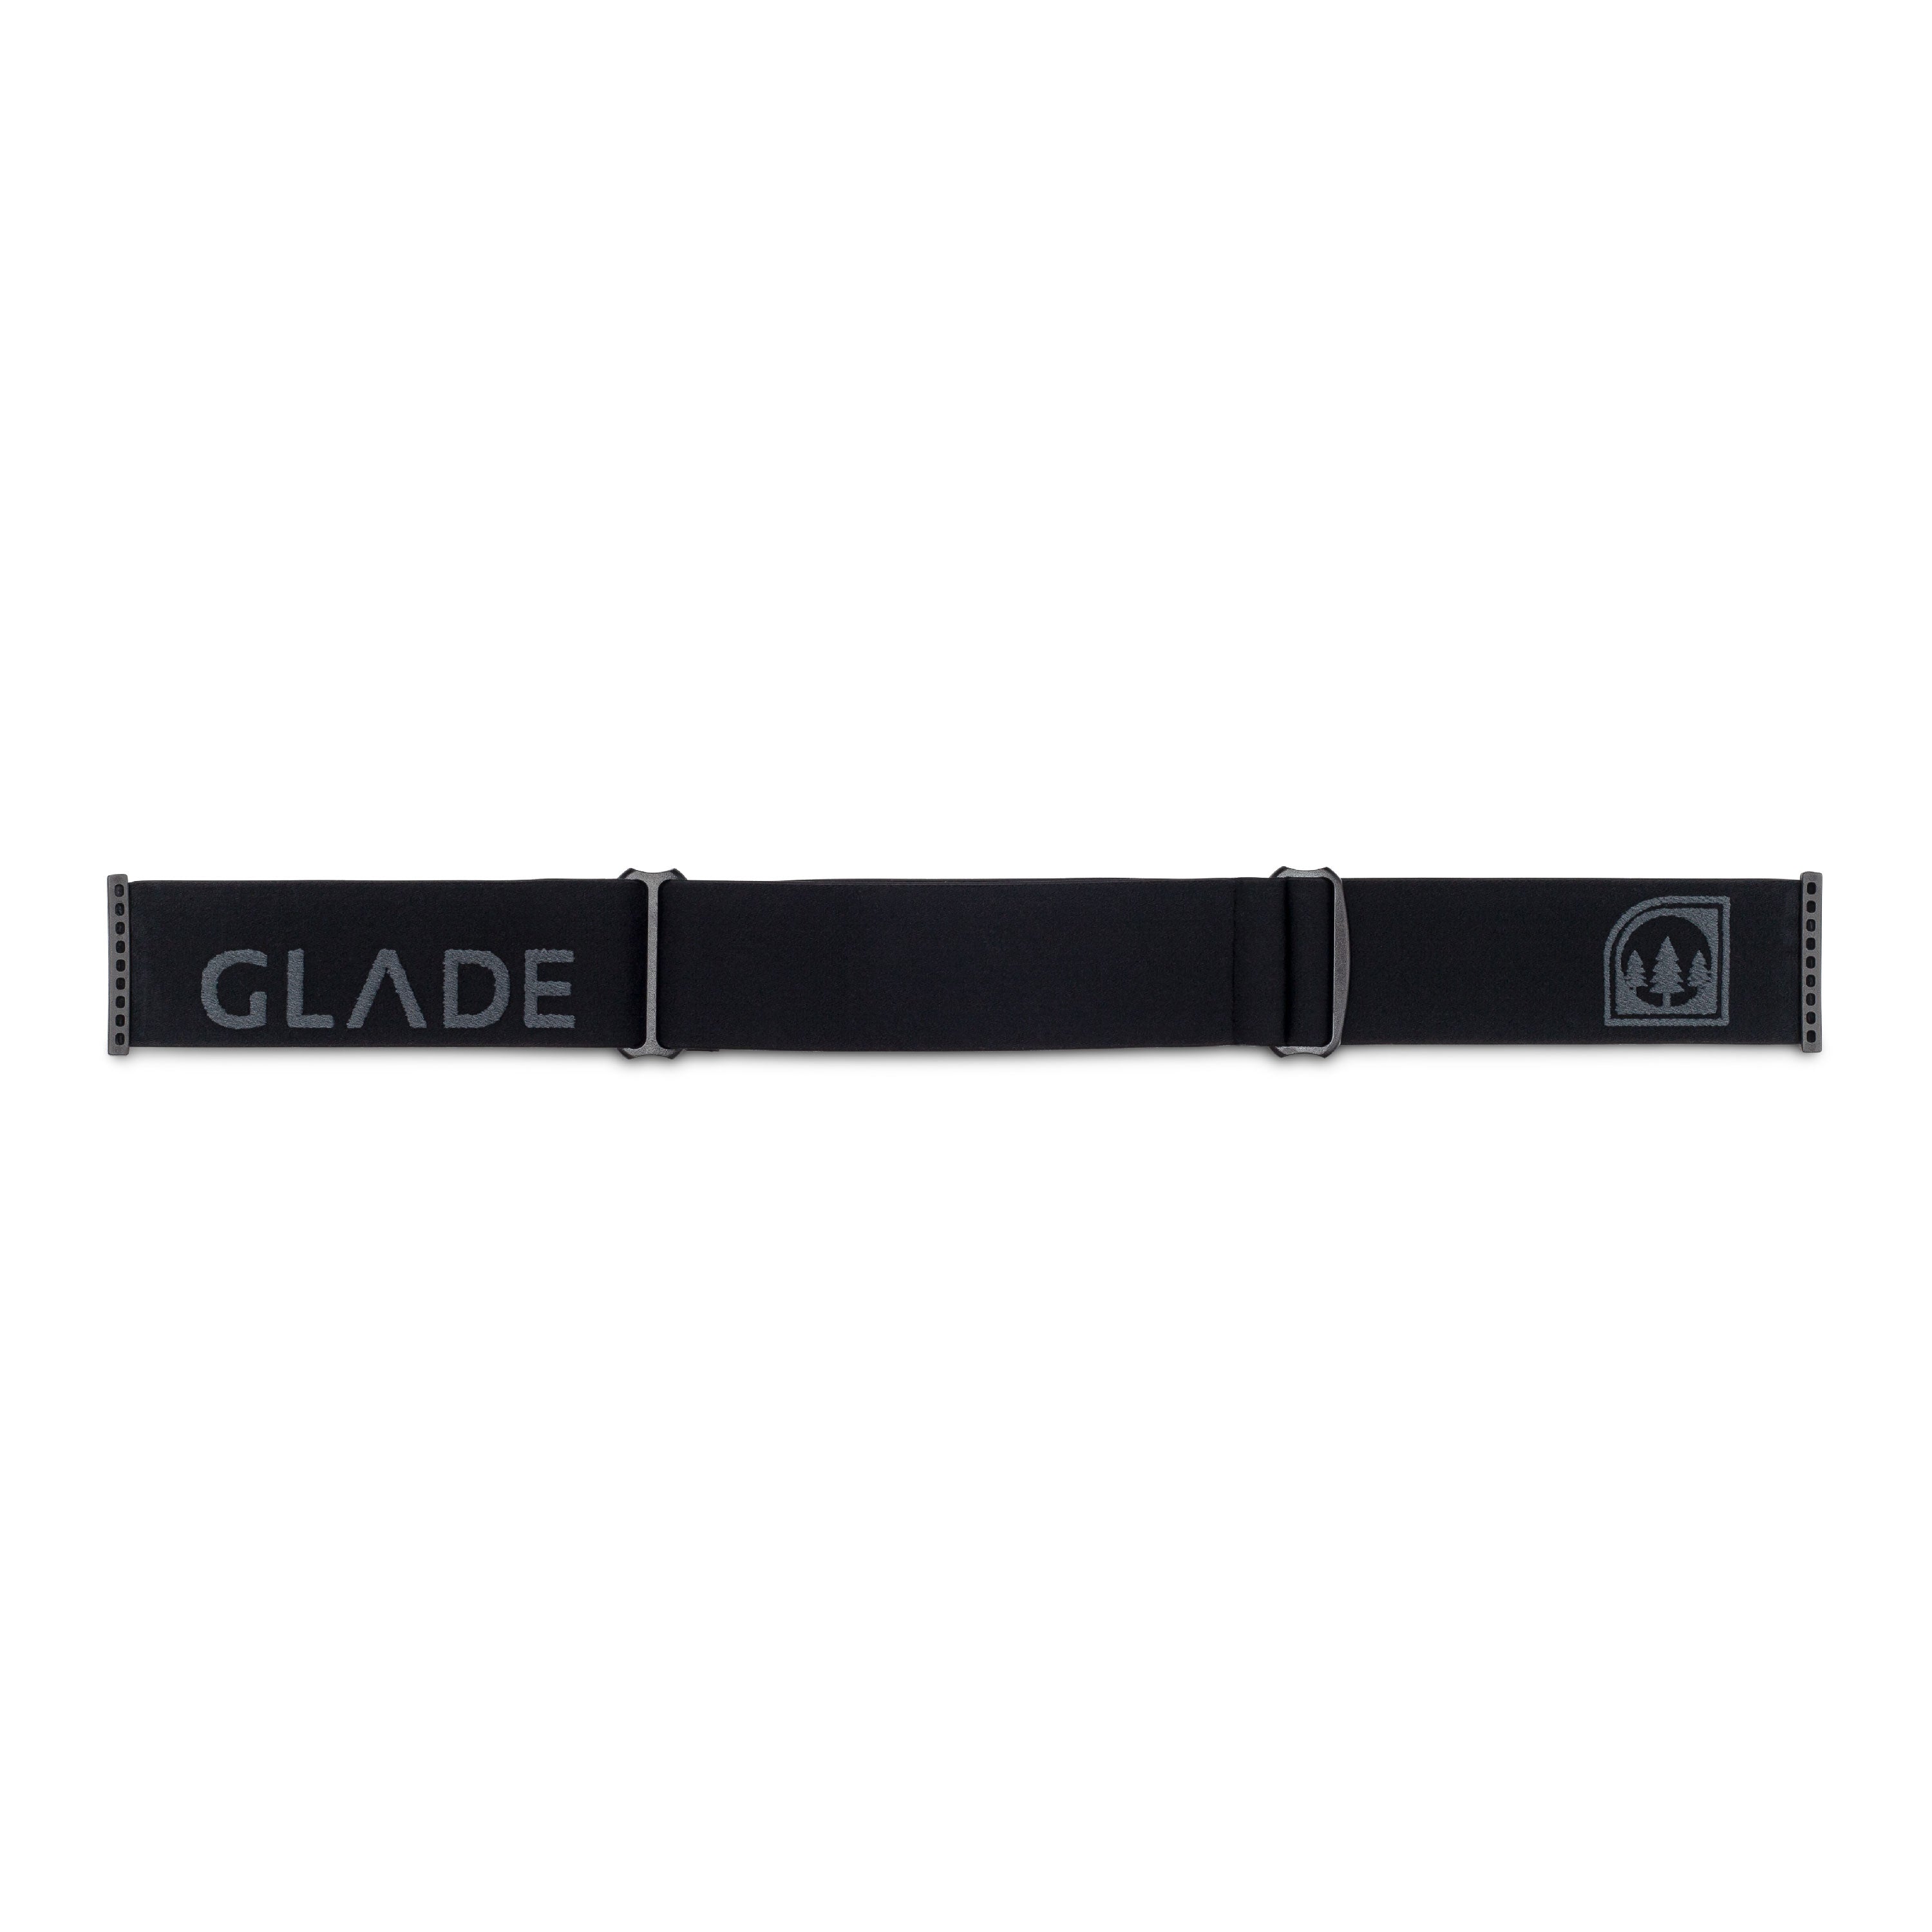 Glade Goggle Strap